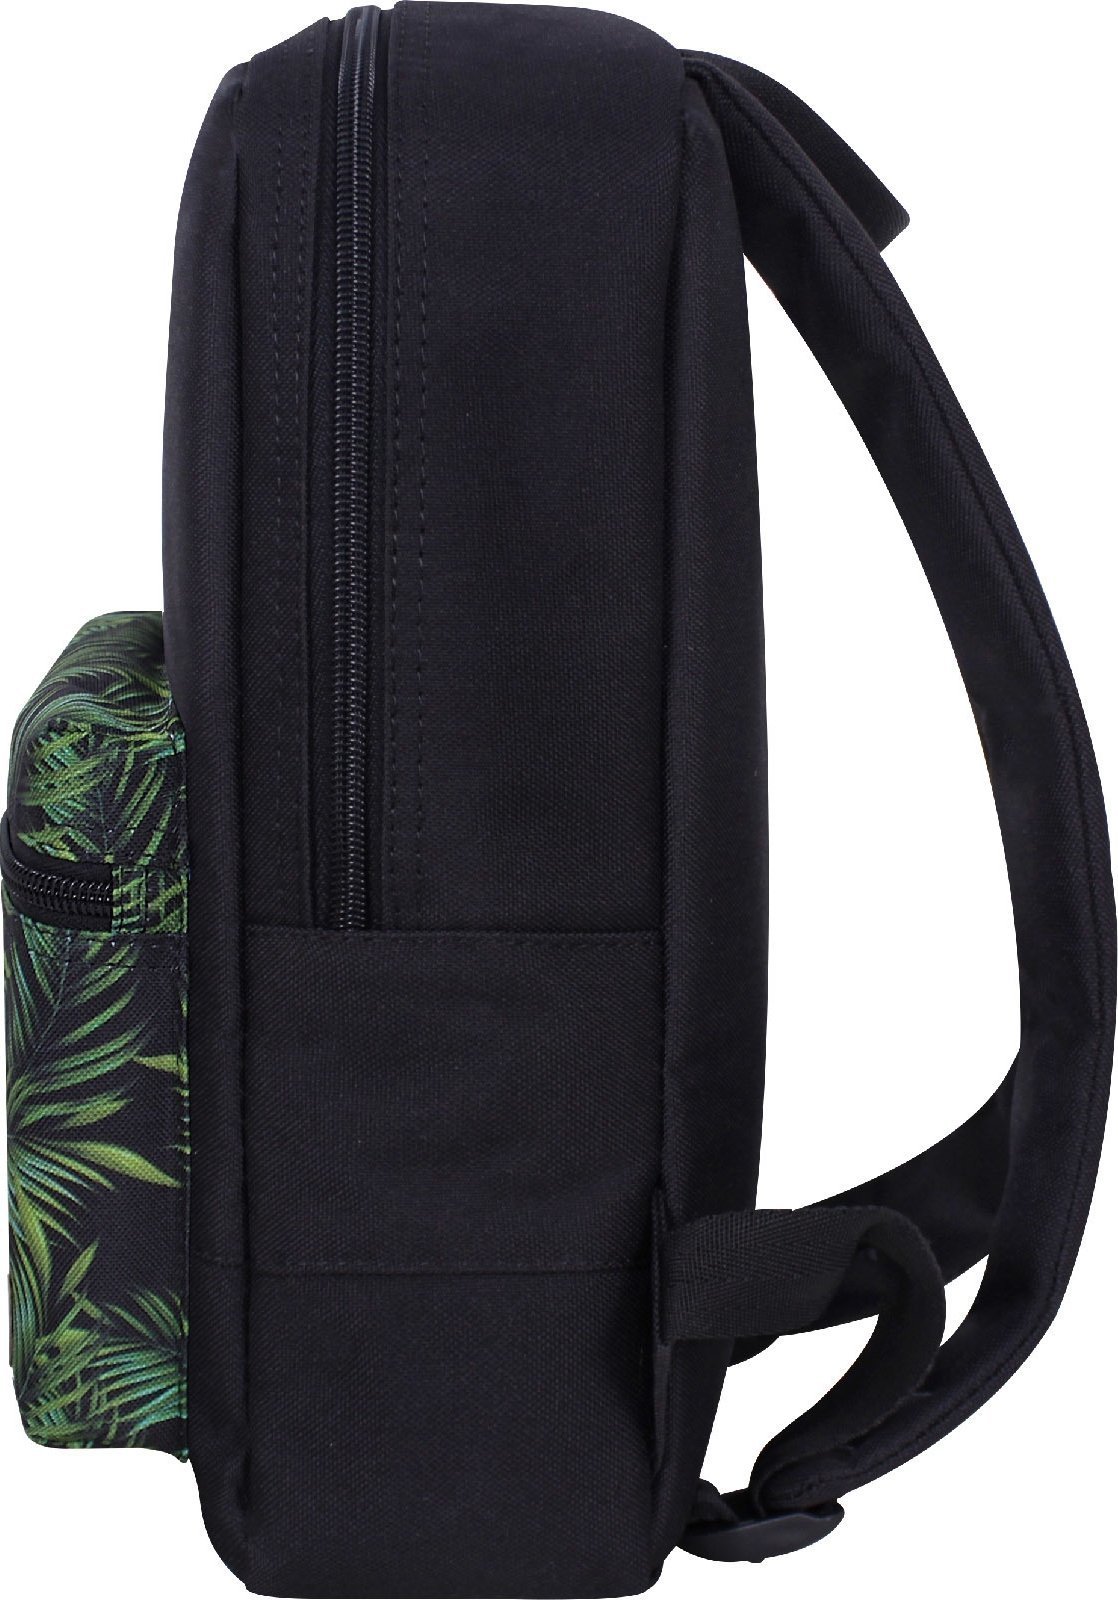 Черный рюкзак из текстиля с принтом Bagland (55575)